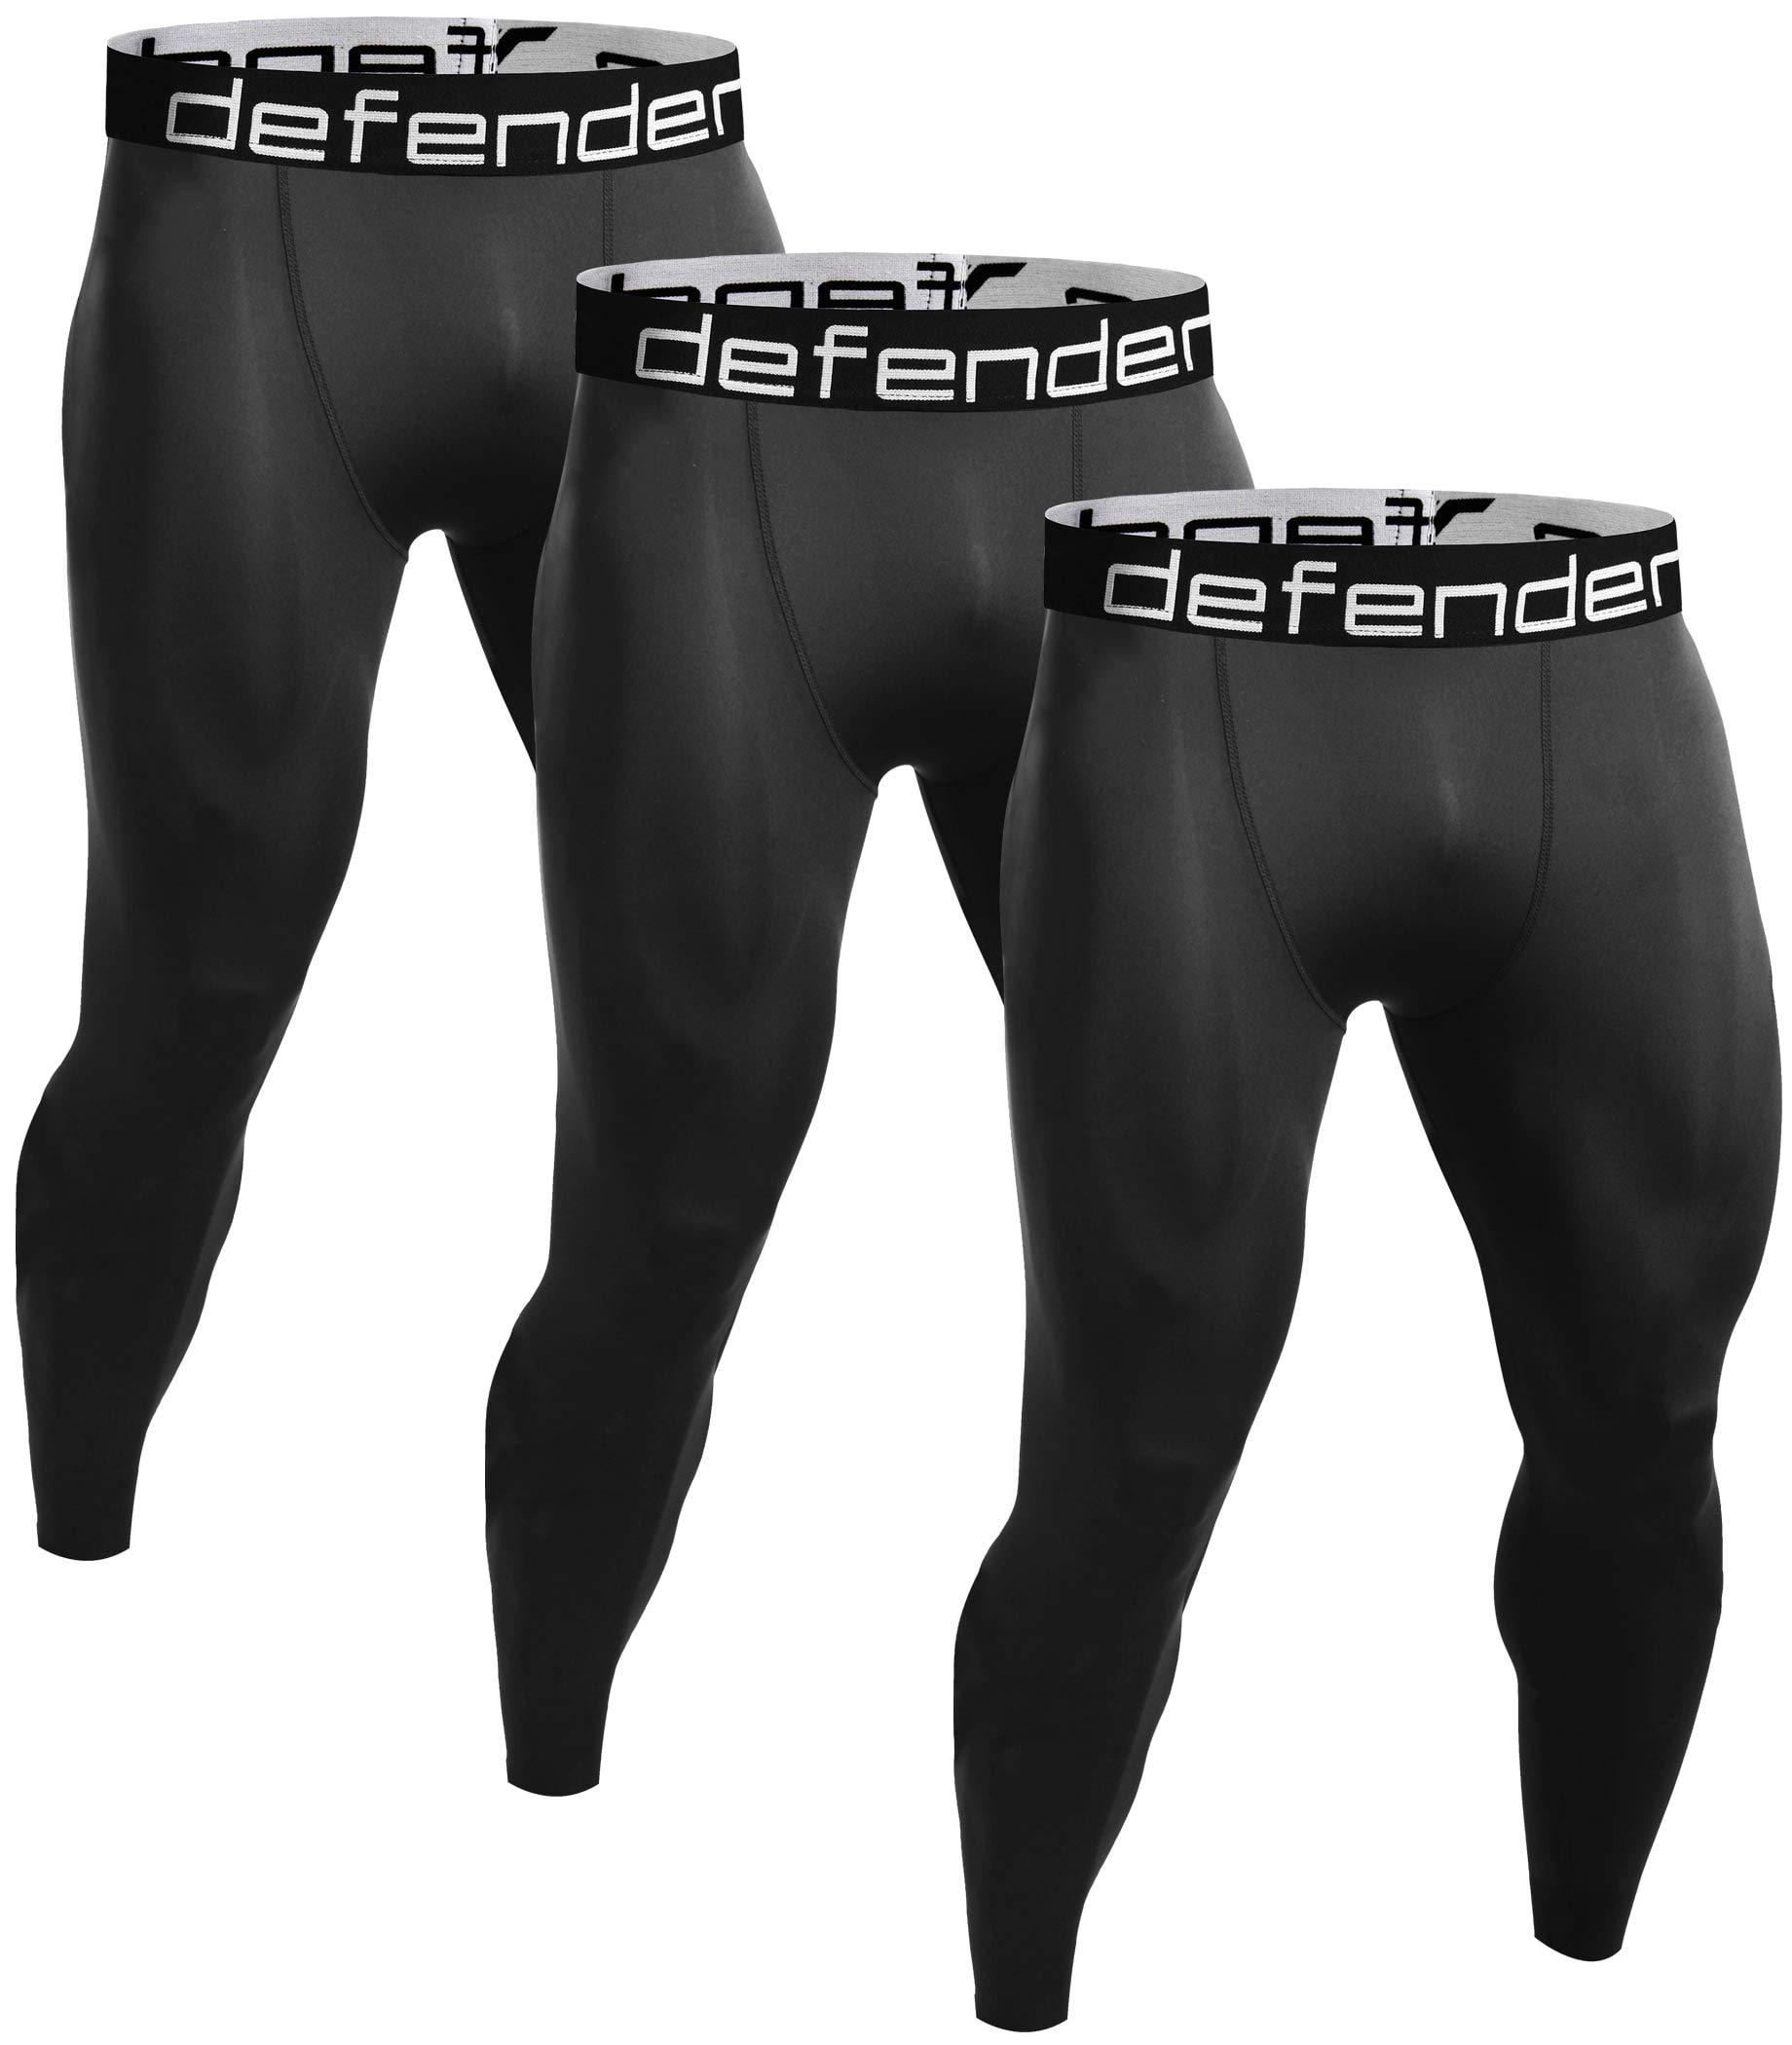 Defender Men's Compression Baselayer Pants